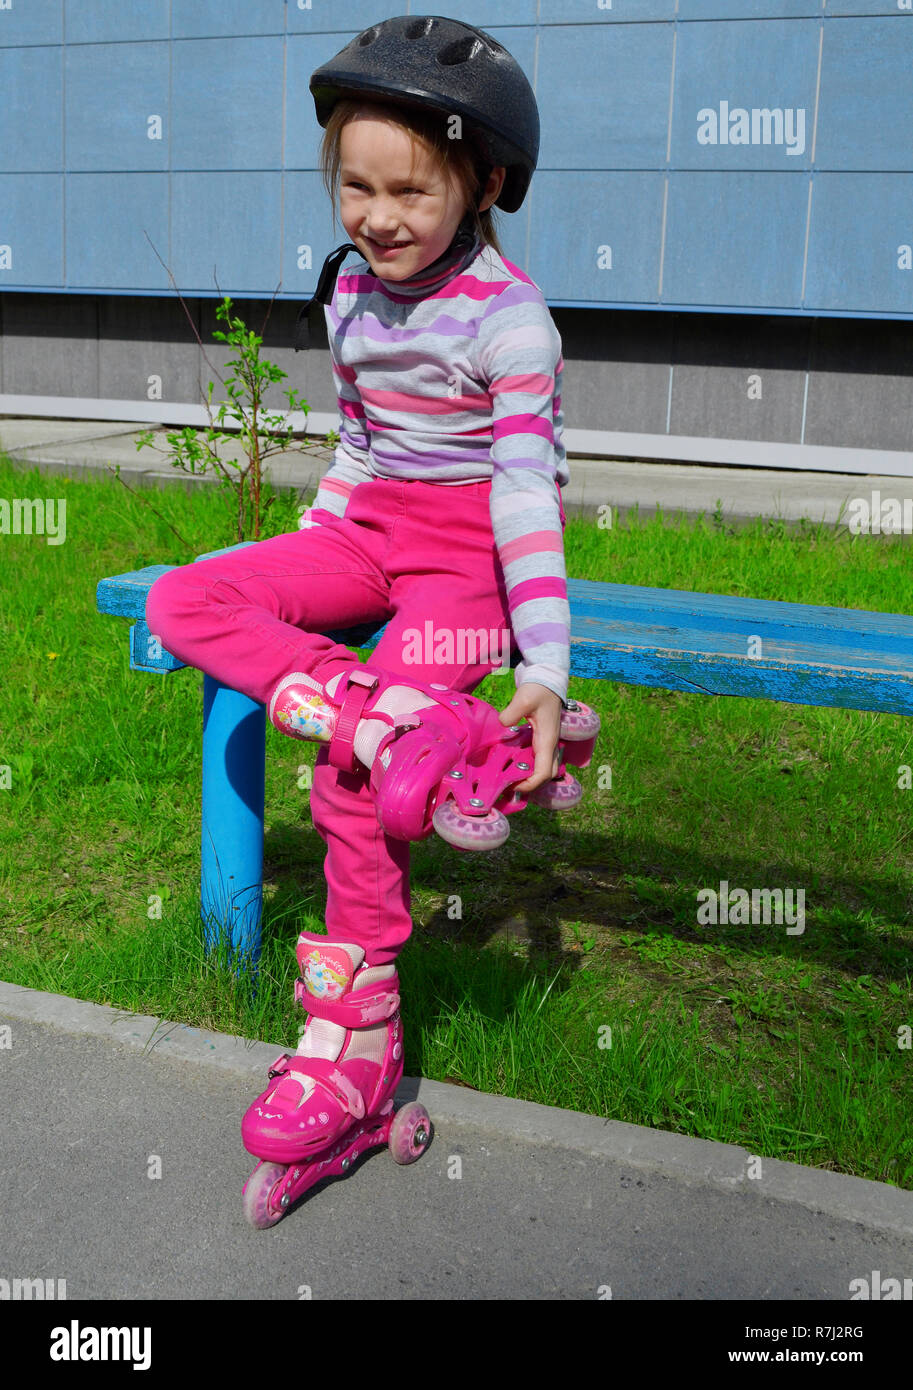 Ein Mädchen in rosa Jeans und einem gestreiften Pullover in einem Roller  Helm auf dem Kopf und der Rollen auf ihren Beinen sitzt auf einer Bank an  einem sonnigen Sommertag. Phot Stockfotografie -